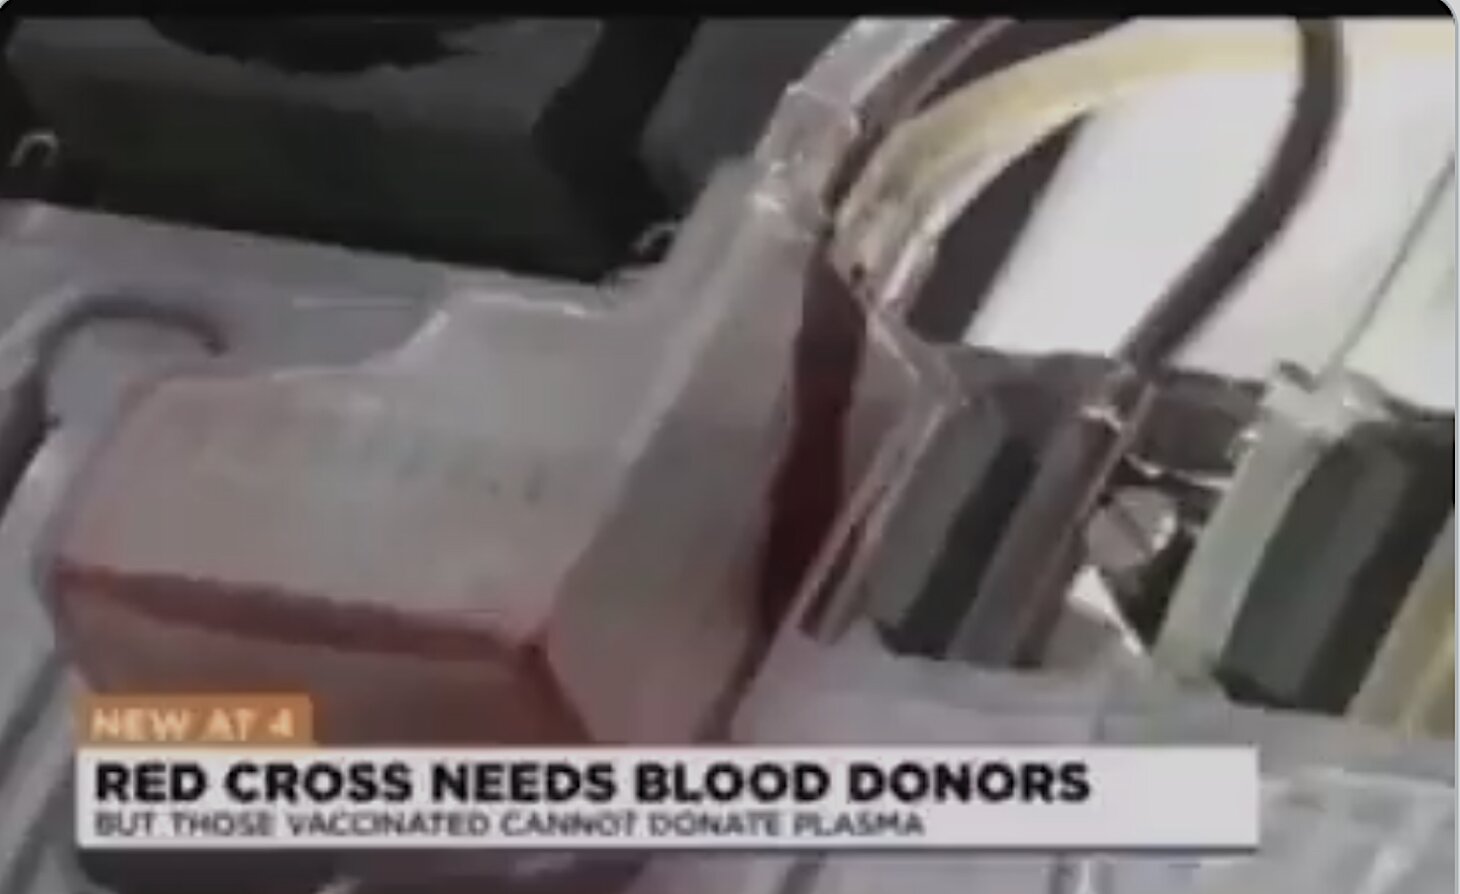 ΤΕΛΟΣ ΠΑΙΧΝΙΔΙΟΥ – ΒΟΜΒΑ Ερυθρού Σταυρού: Δεν μπορούν οι εμβολιασμένοι να δωρίσουν πλάσμα αίματος καθώς το εμβόλιο εξαφανίζει τα αντισώματά τους!!!